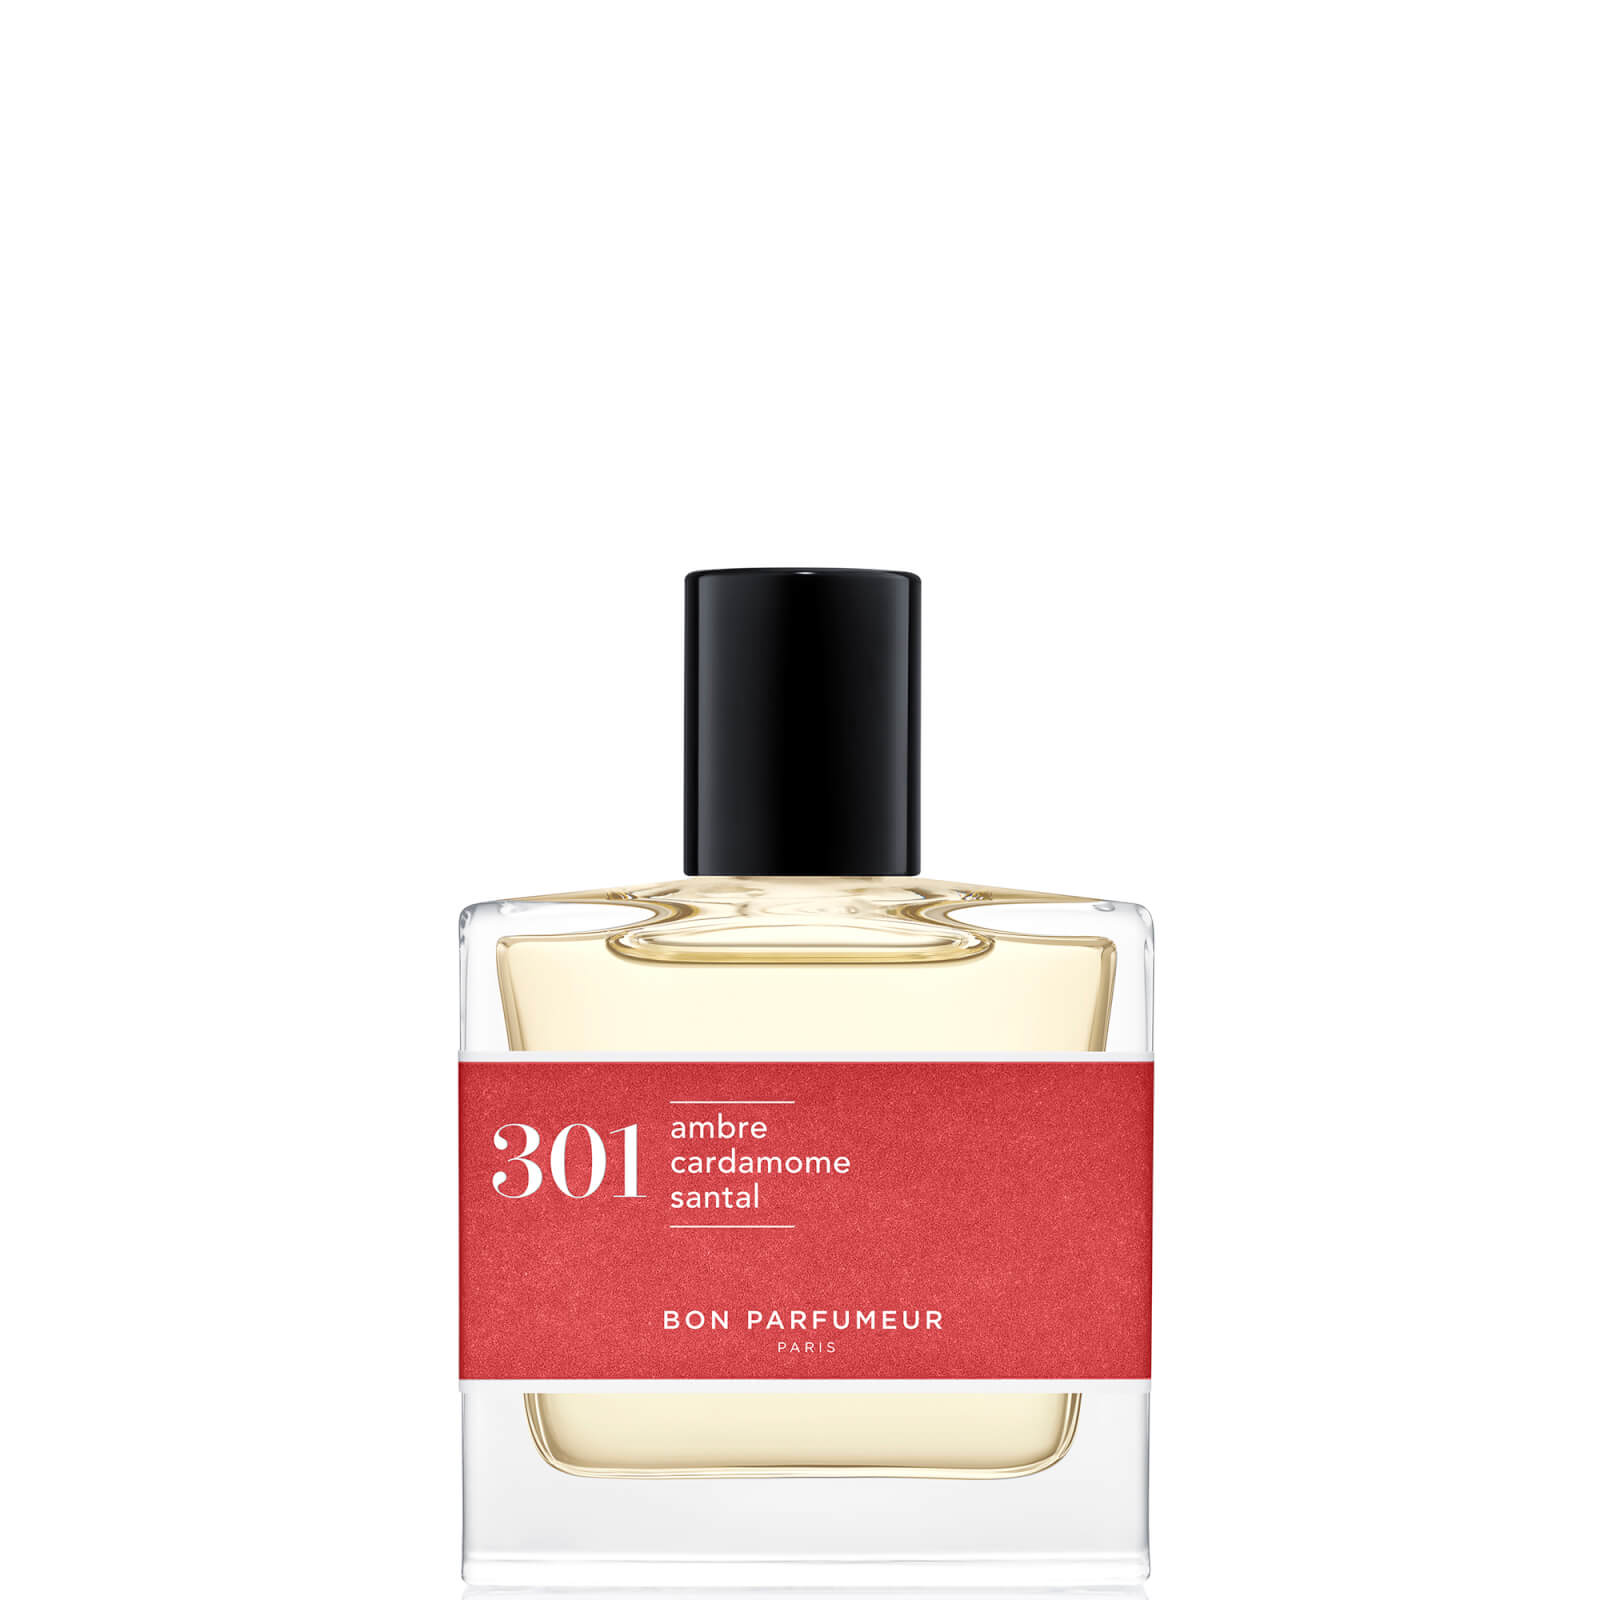 Image of Bon Parfumeur 301 Sandalo Ambra Cardamomo Eau de Parfum - 30ml